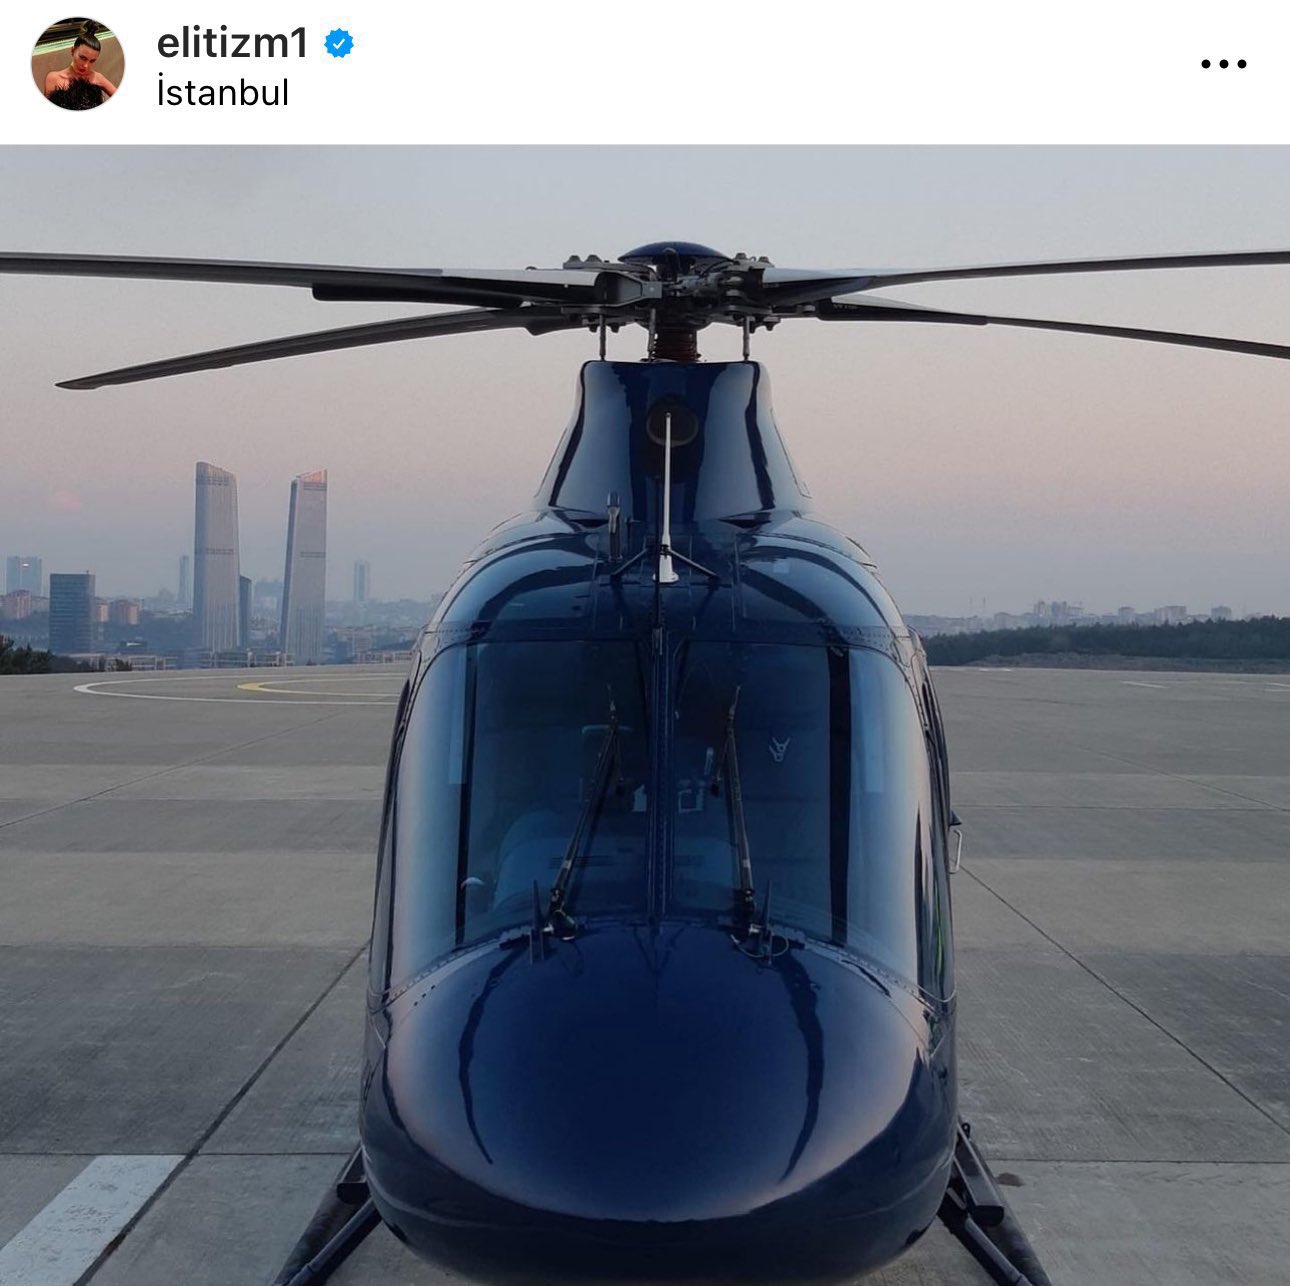 Whisper on X: "Bahar Candan sosyal medya hesabından paylaştığı para dolu  çanta ve helikopter fotoğrafı ile ilgili “onlar photoshop” dedi.  https://t.co/9bHMh77qfQ" / X